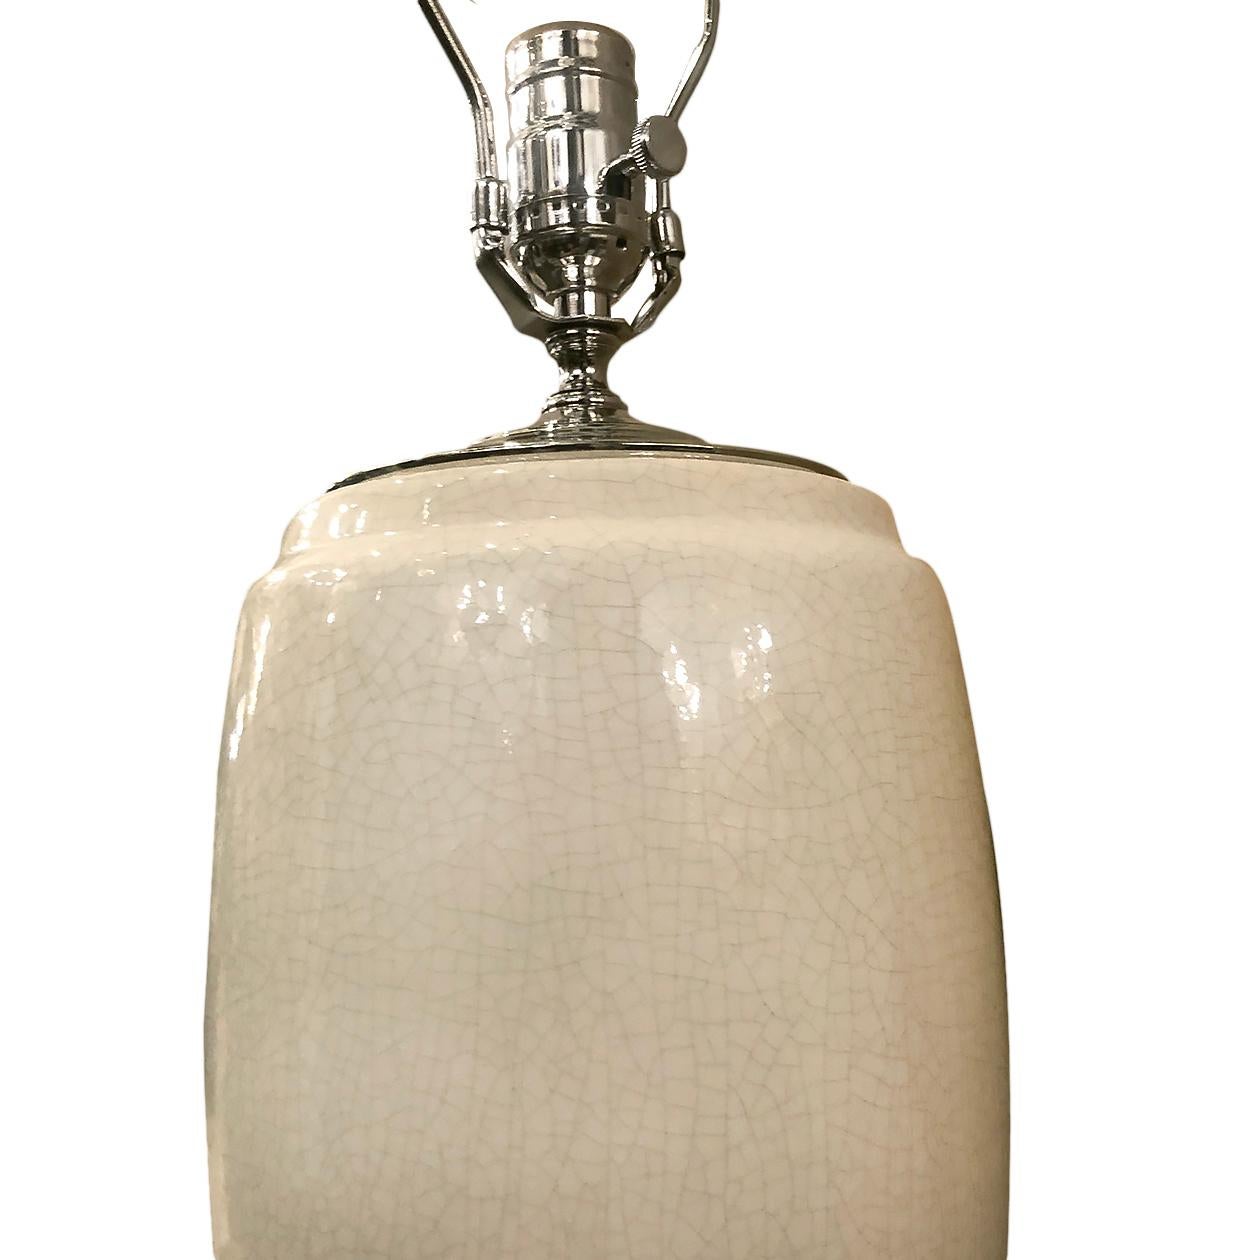 Eine einzelne italienische Tischlampe aus weißem Porzellan aus der Mitte des Jahrhunderts.

Abmessungen:
Höhe: 17